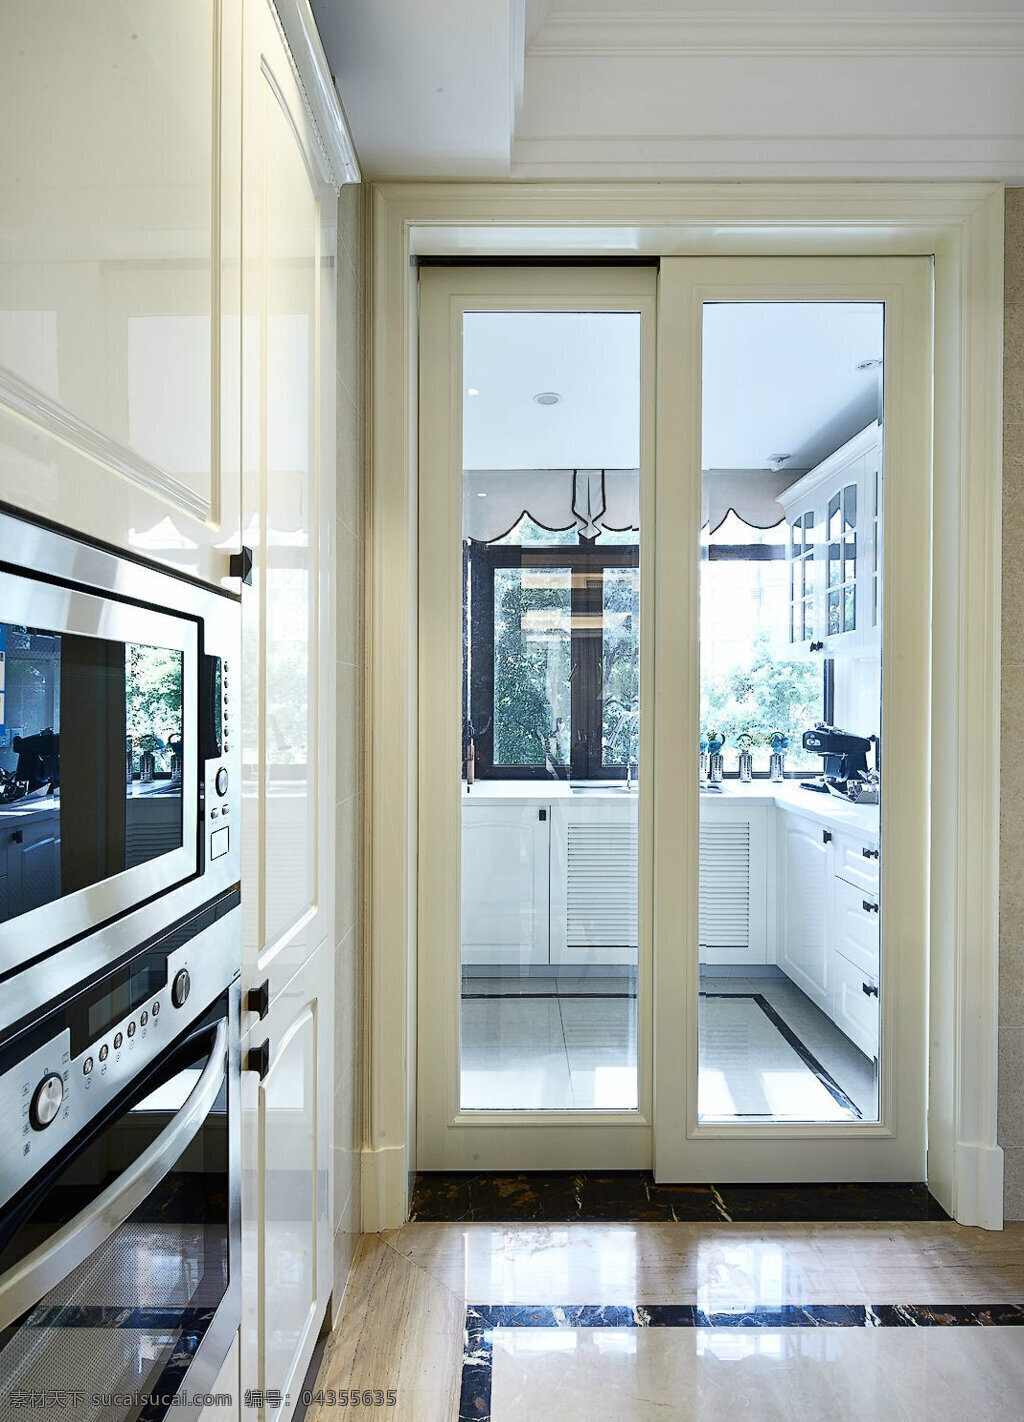 时尚 简 欧 厨房 装修 玻璃门 隔断 效果图 简约 简洁 玻璃门隔断